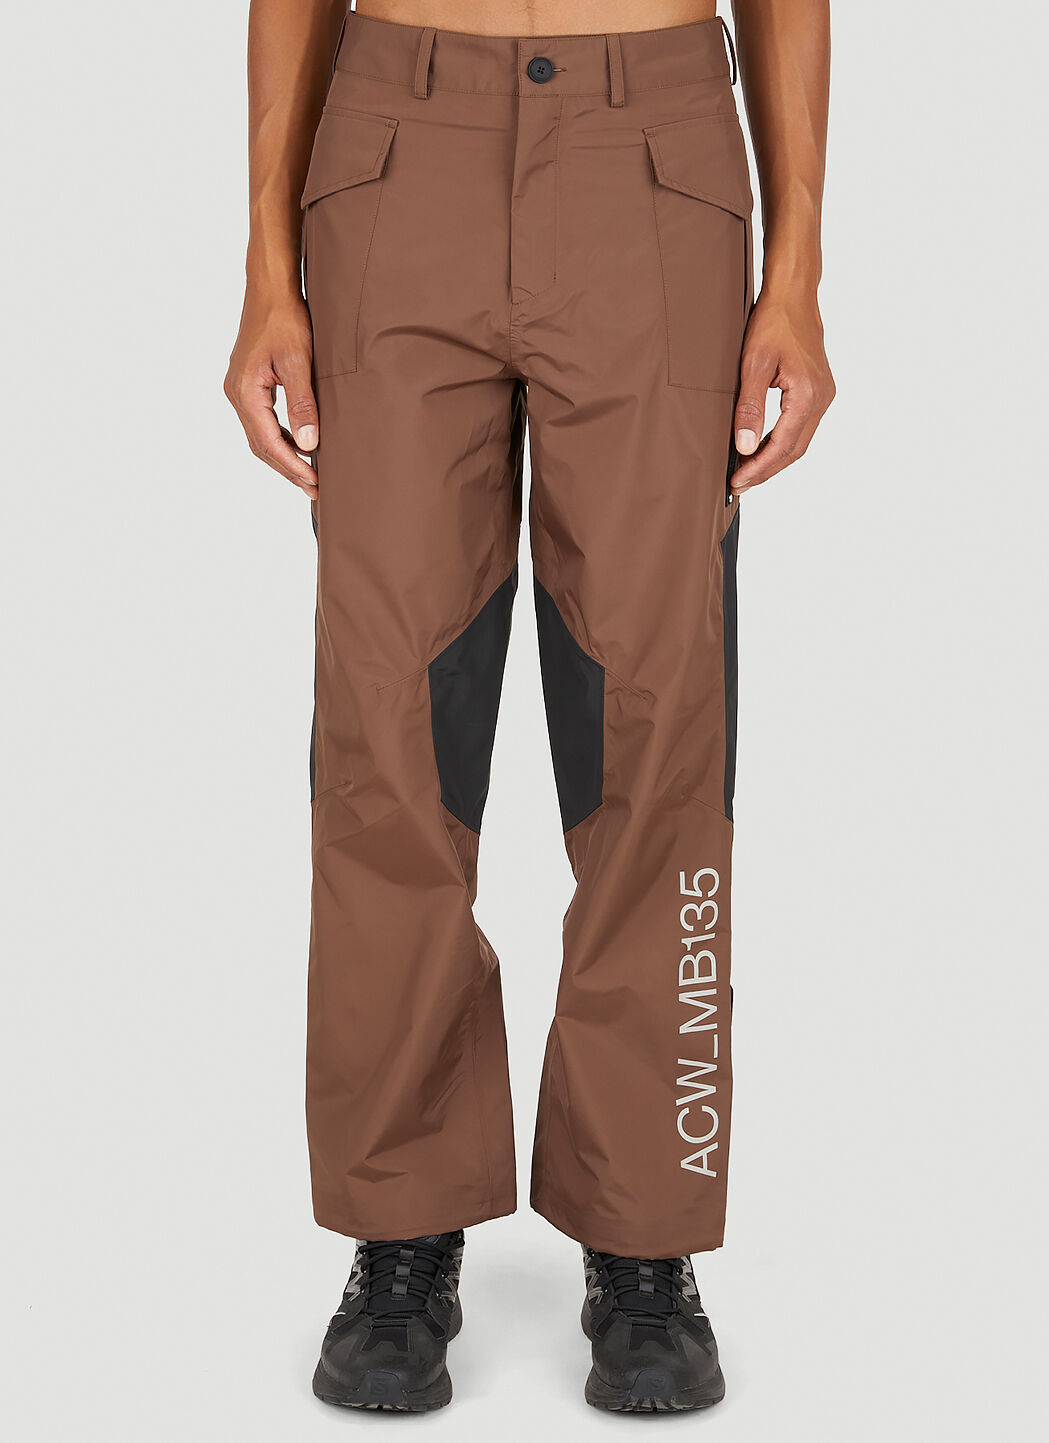 A-COLD-WALL* 3L TeSwiss 军装裤 棕 acw0149007